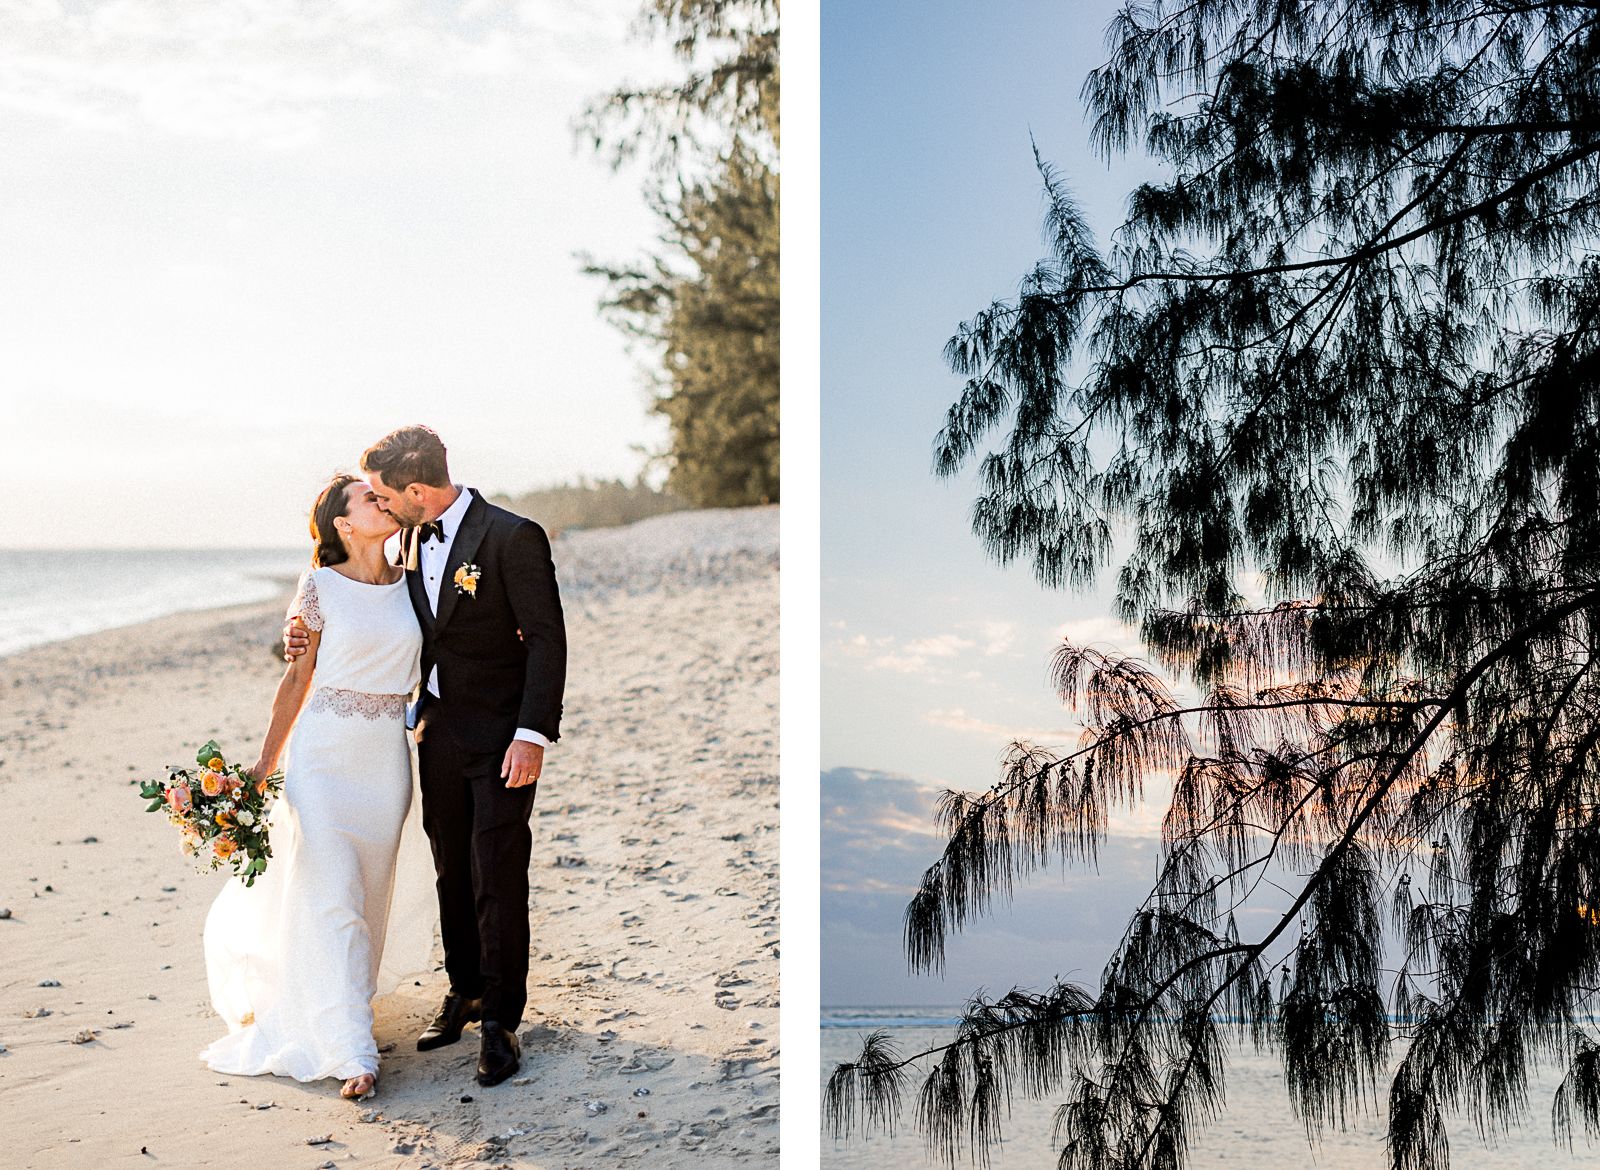 Photographie de Mathieu Dété, photographe de mariage à Saint-Paul sur l'île de la Réunion 974, présentant un couple qui marche sur la plage lors d'un mariage au LUX* Saint-Gilles, au coucher du soleil